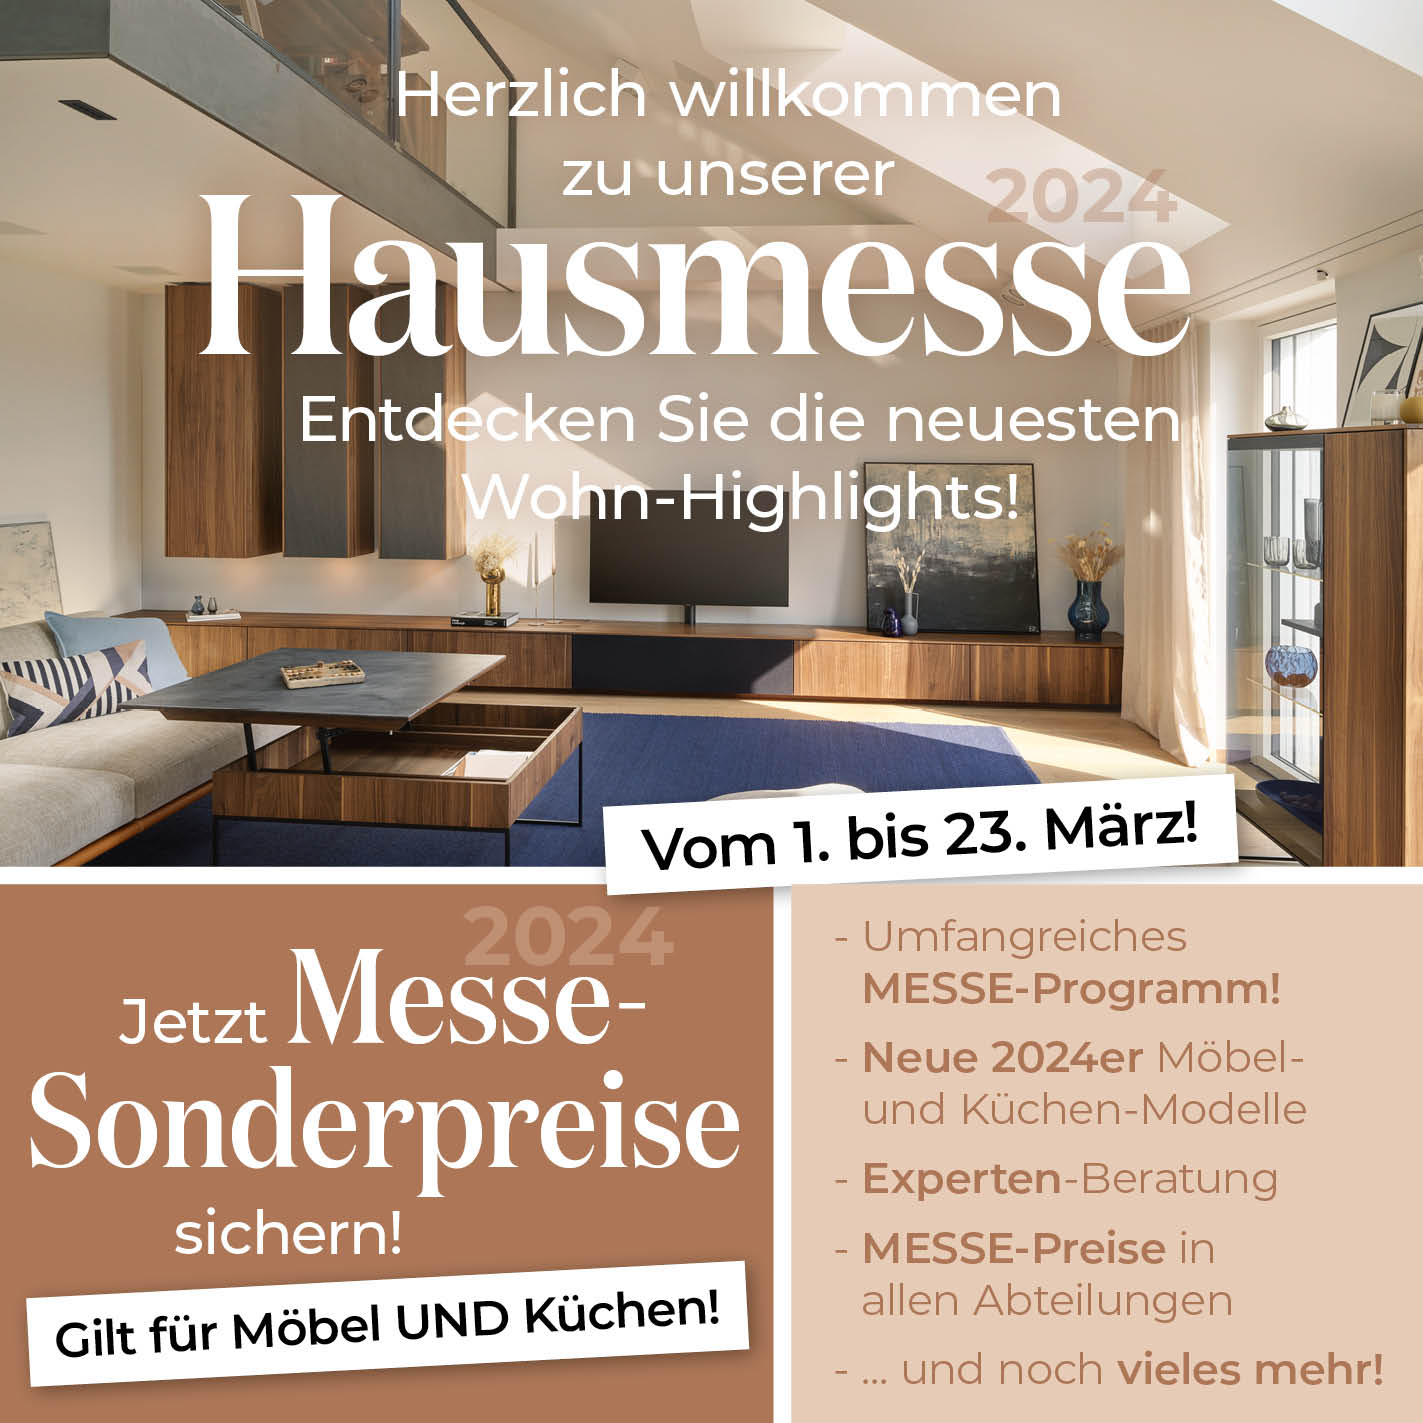 Endner Hausmesse Slide mobile 24 03 2